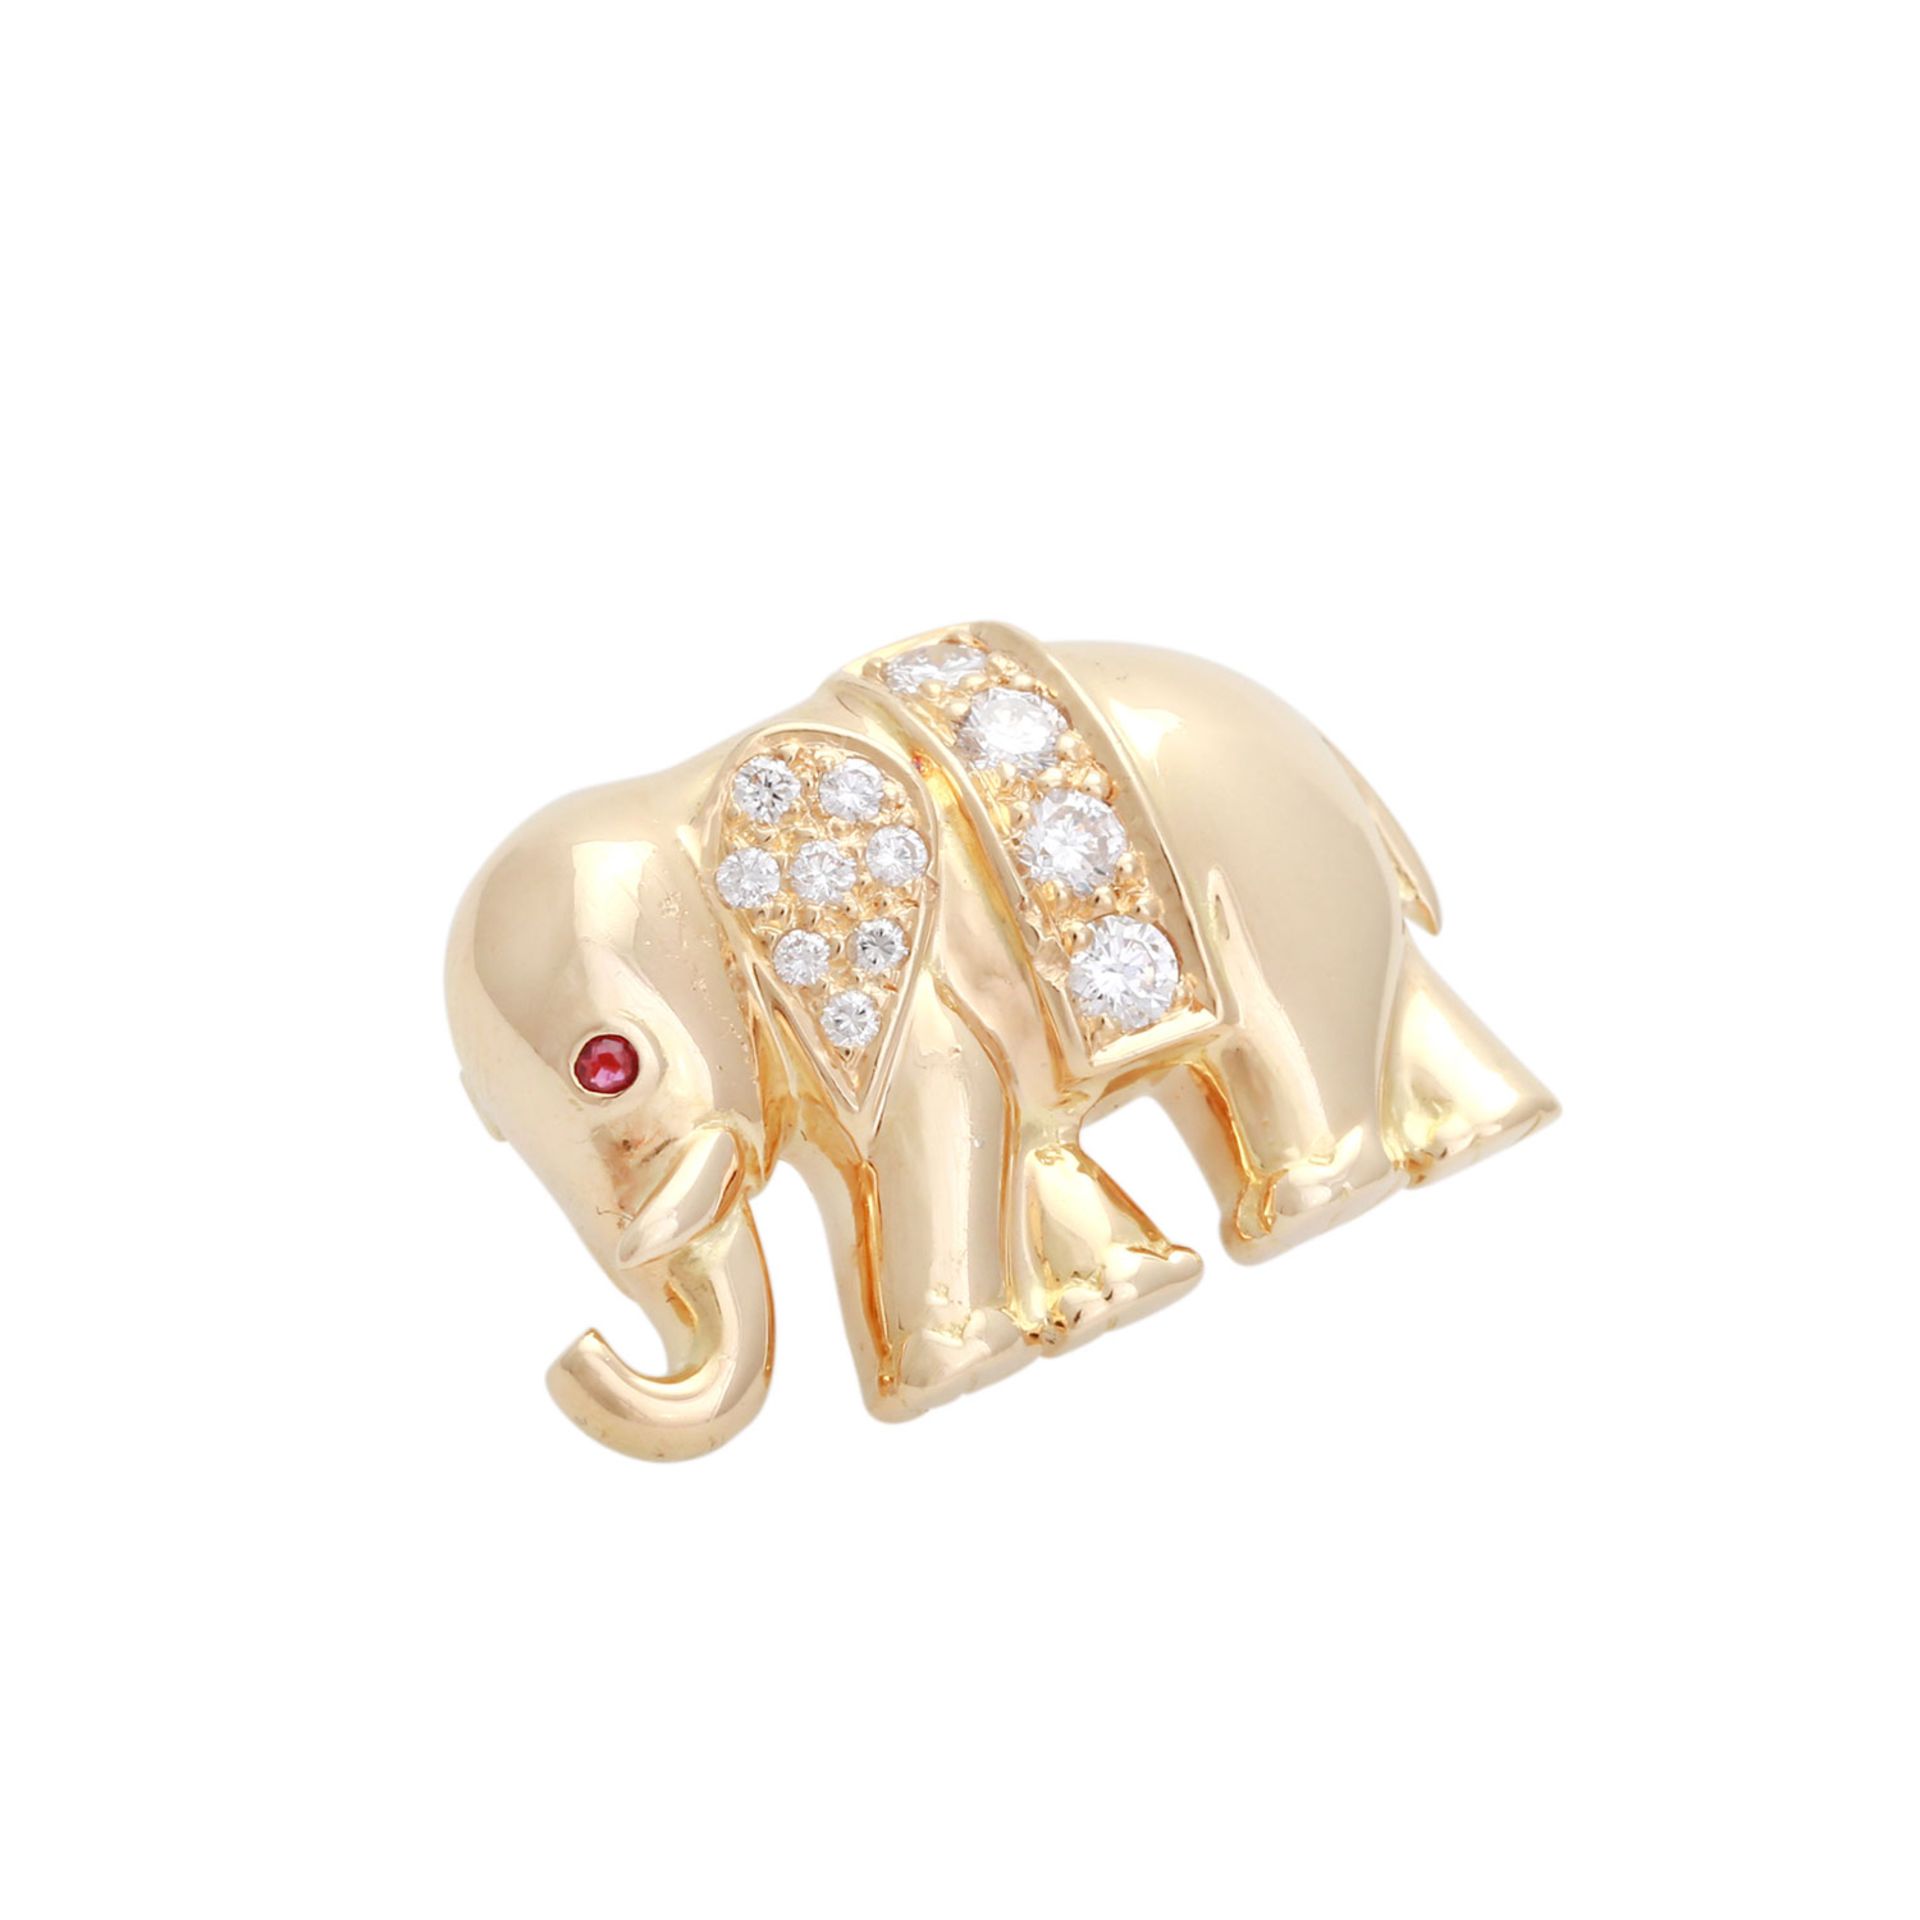 Kettenverkürzer "Elefant" mit Brillanten, Gewicht 10g Legierung 585/000 - Image 2 of 4